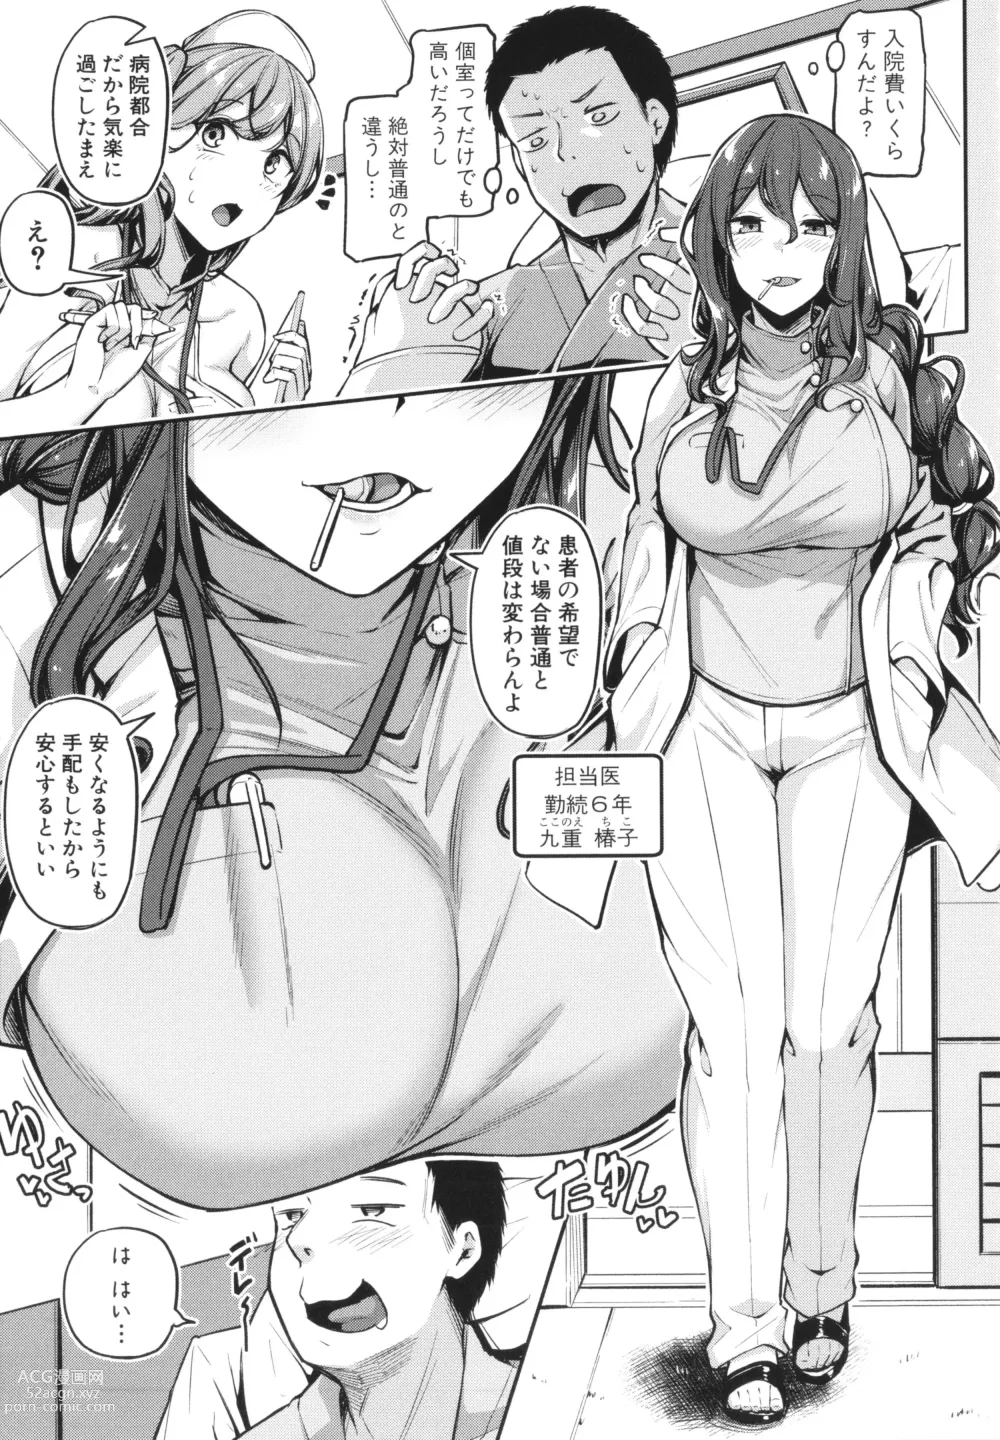 Page 11 of manga Ecchi na Nurse-tachi ga Koshitsu de Koubi Shite Kurerutte Hontou Desuka!?